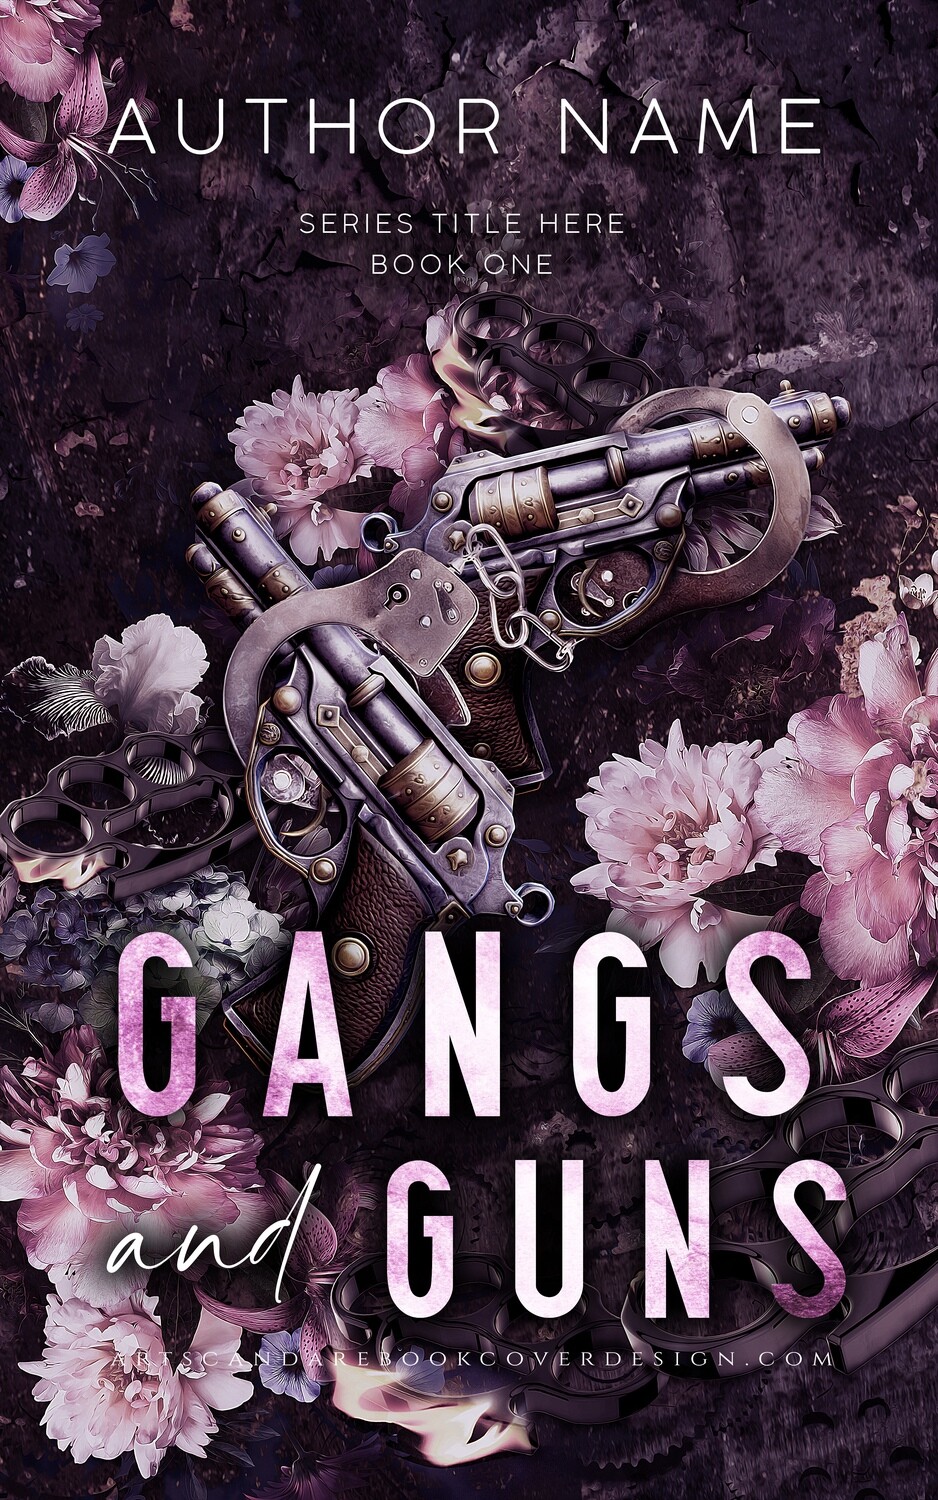 GANGS AND GUNS